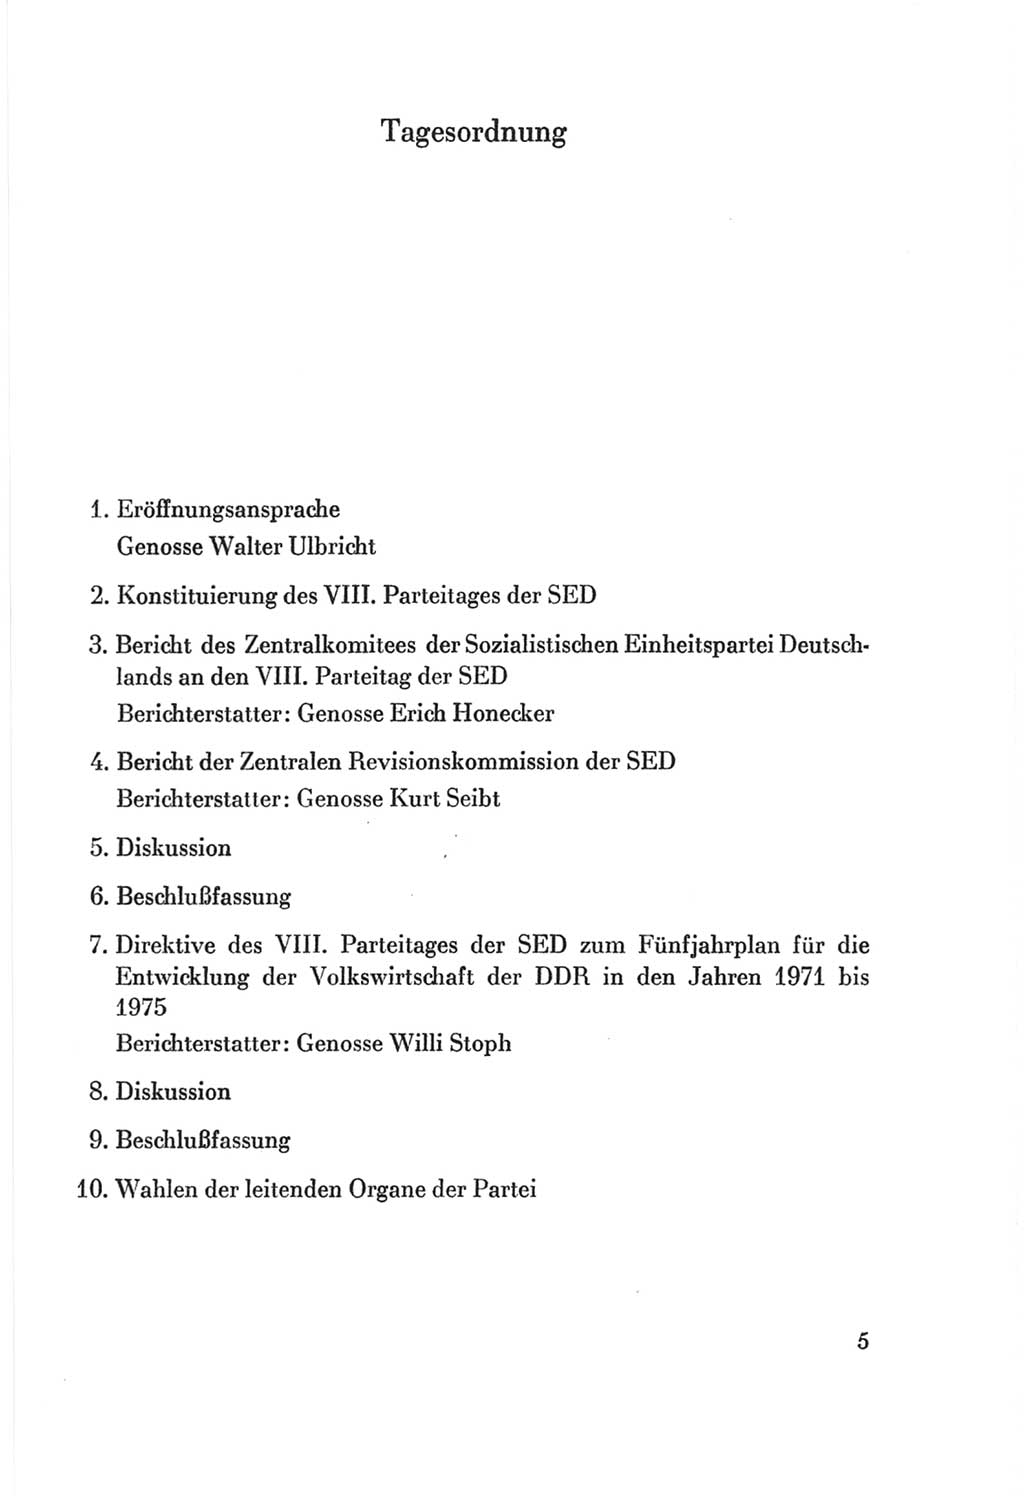 Protokoll der Verhandlungen des Ⅷ. Parteitages der Sozialistischen Einheitspartei Deutschlands (SED) [Deutsche Demokratische Republik (DDR)] 1971, Band 1, Seite 5 (Prot. Verh. Ⅷ. PT SED DDR 1971, Bd. 1, S. 5)